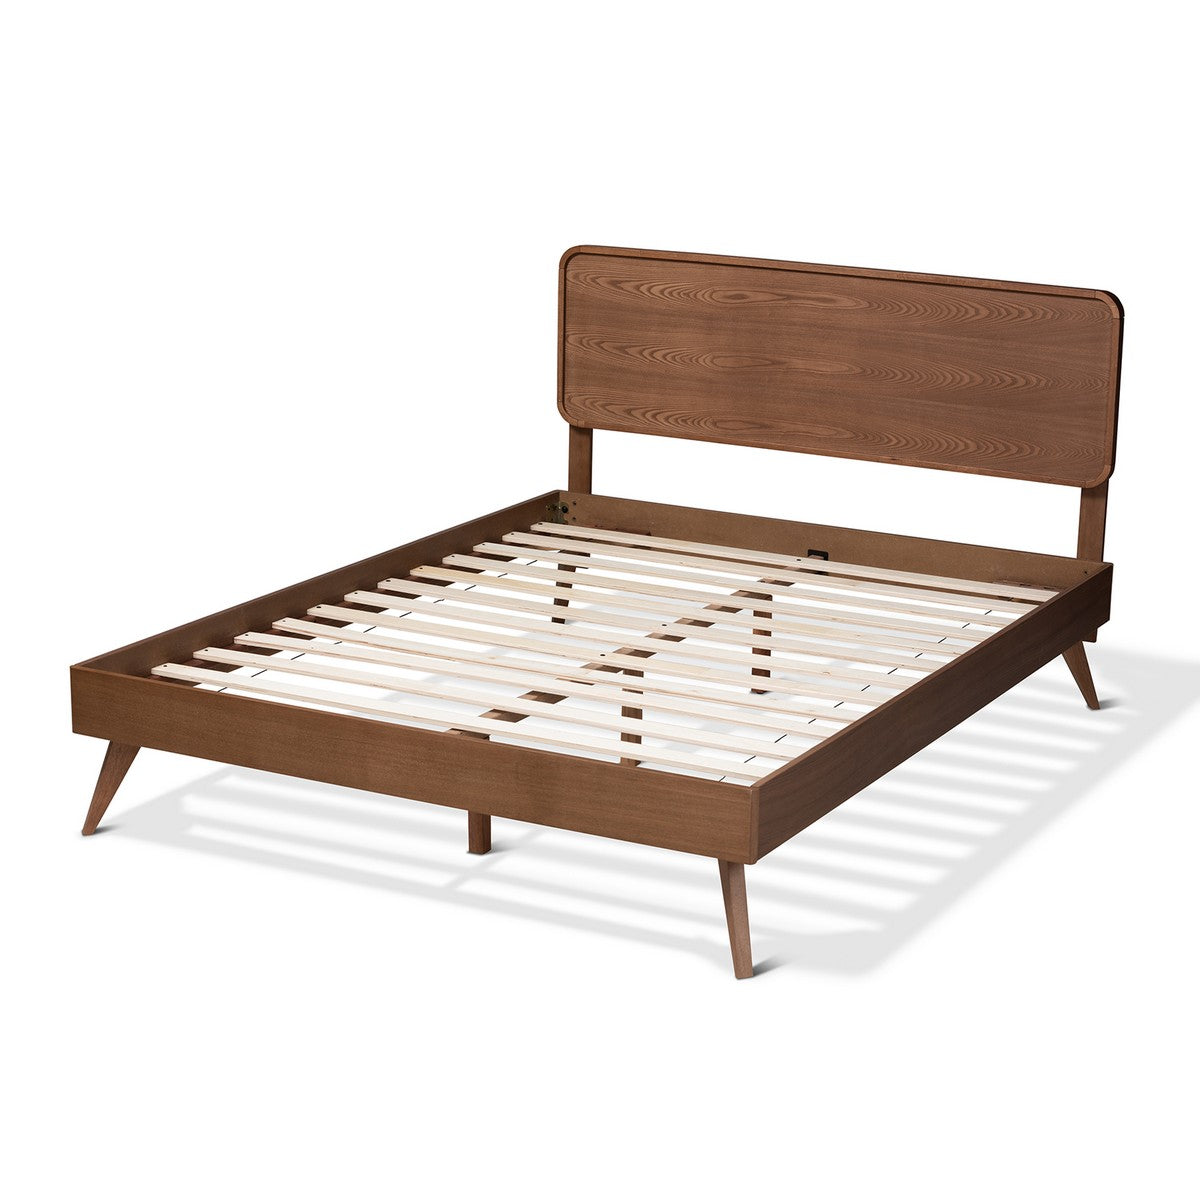 Baxton Studio Demeter Mid-Century Modern Walnut Brown Finished Wood Queen Size Platform Bed